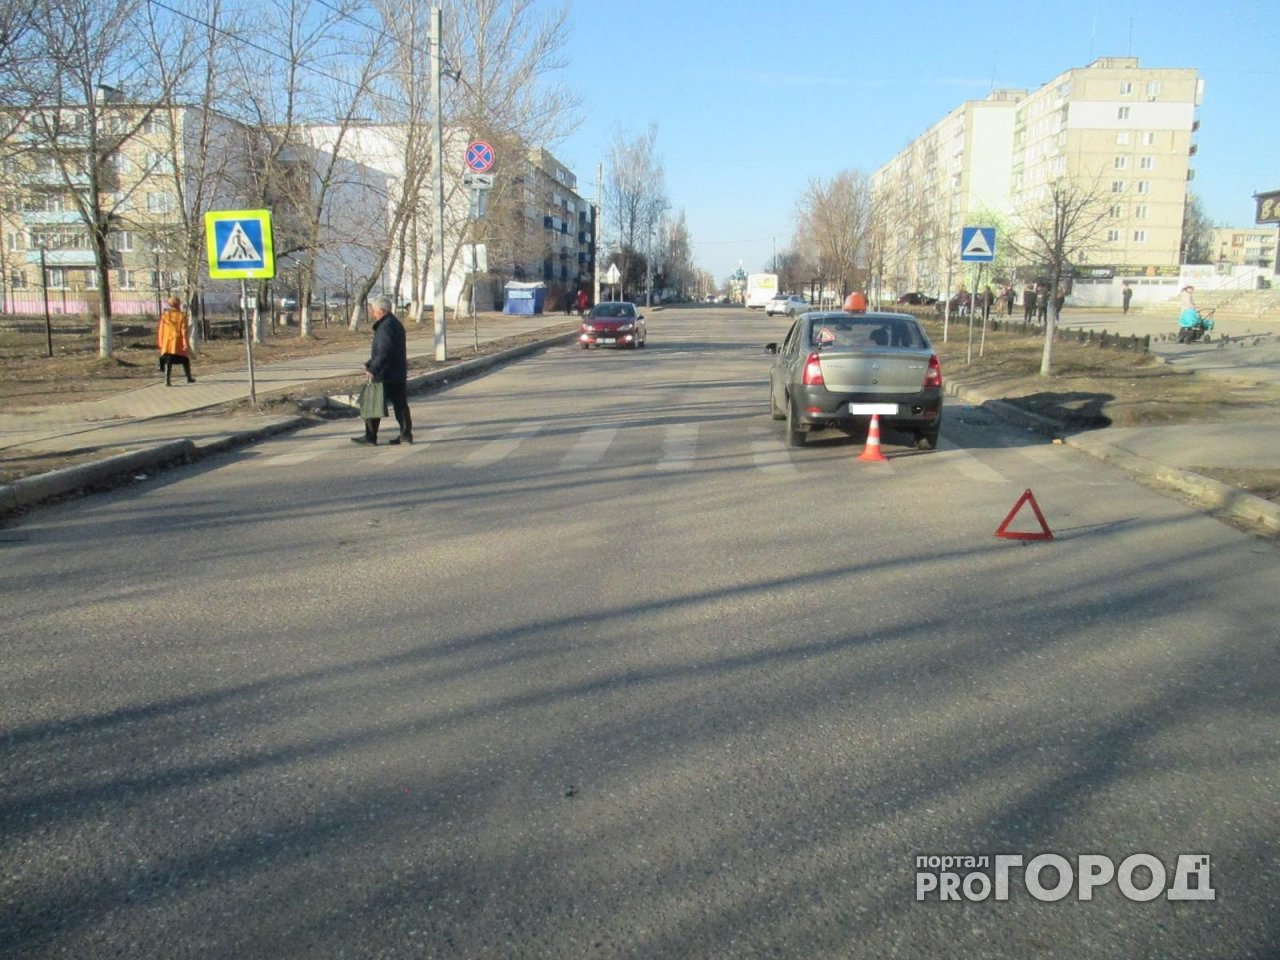 Под Ярославлем на переходе водитель сбил двух девочек-подростков: дети получили травмы